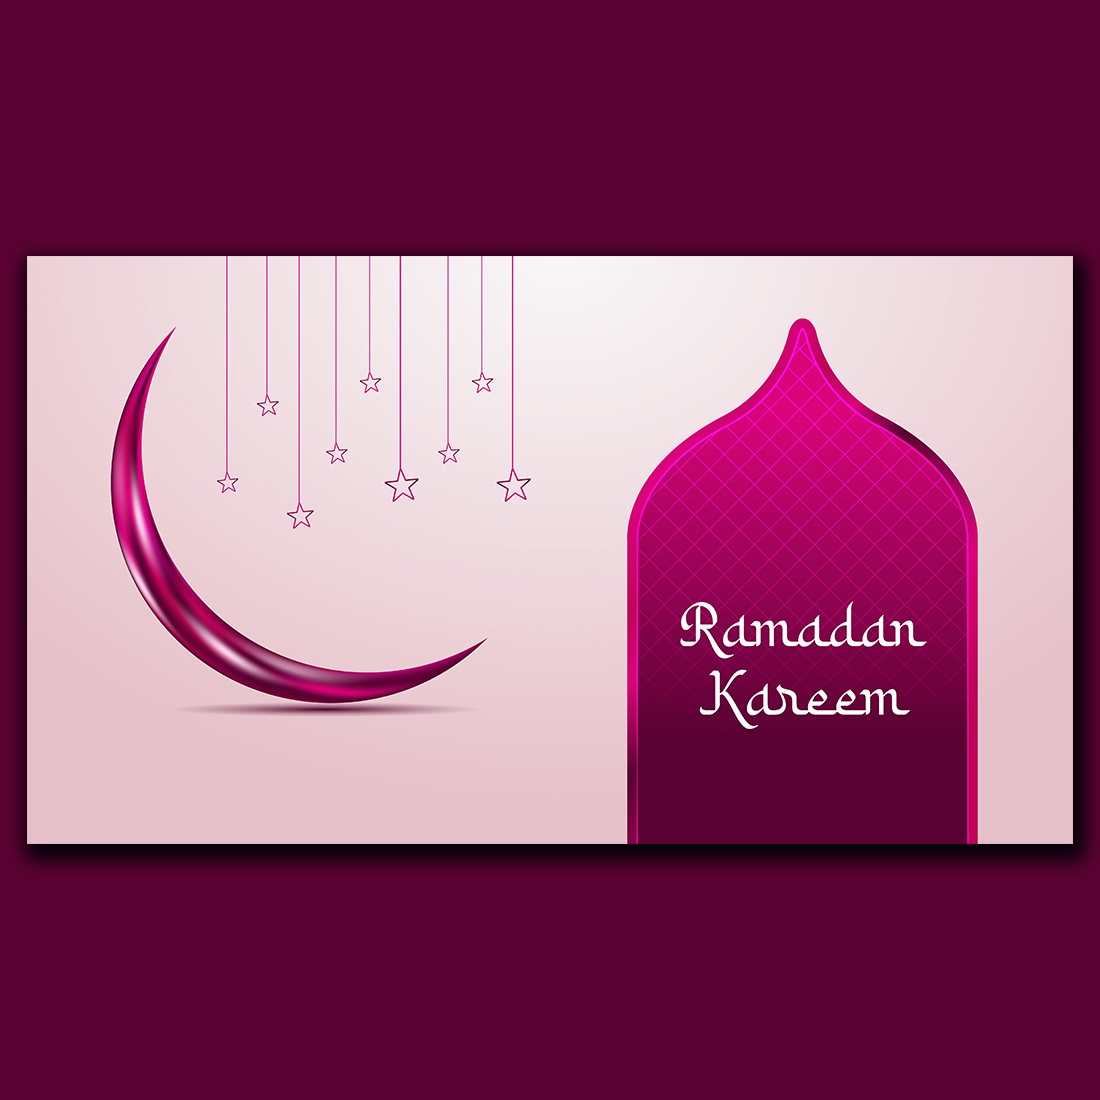 Colorful Ramadan Kareem greetings banner design cover image.